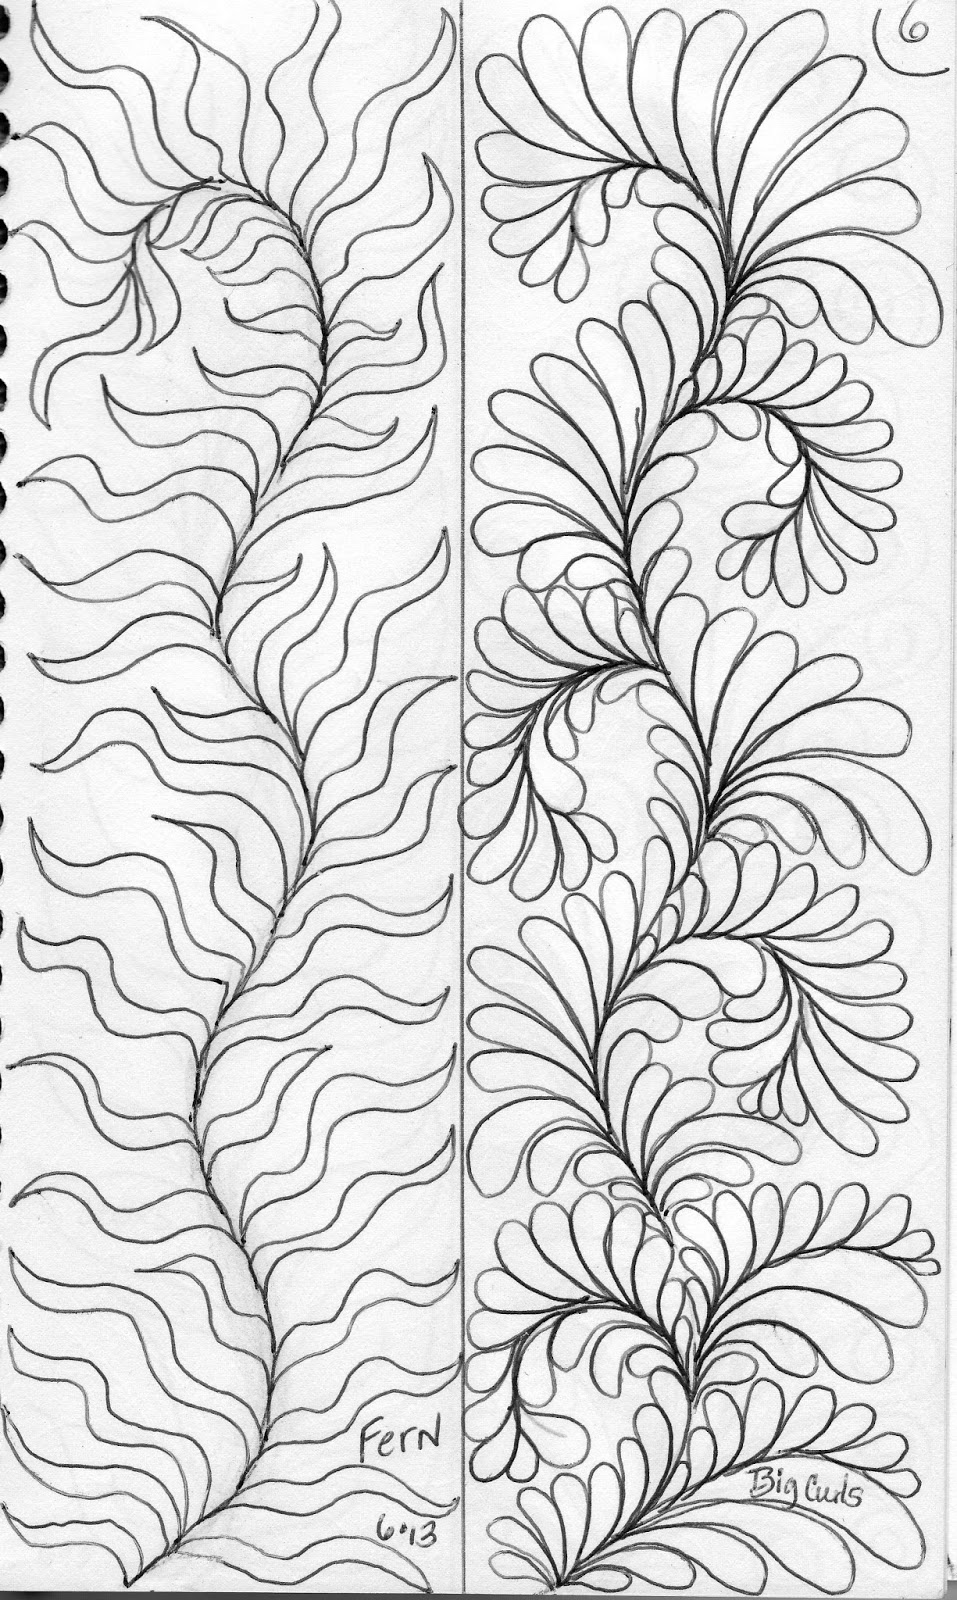 LuAnn Kessi: Sketch Book.....Designs on a Spine